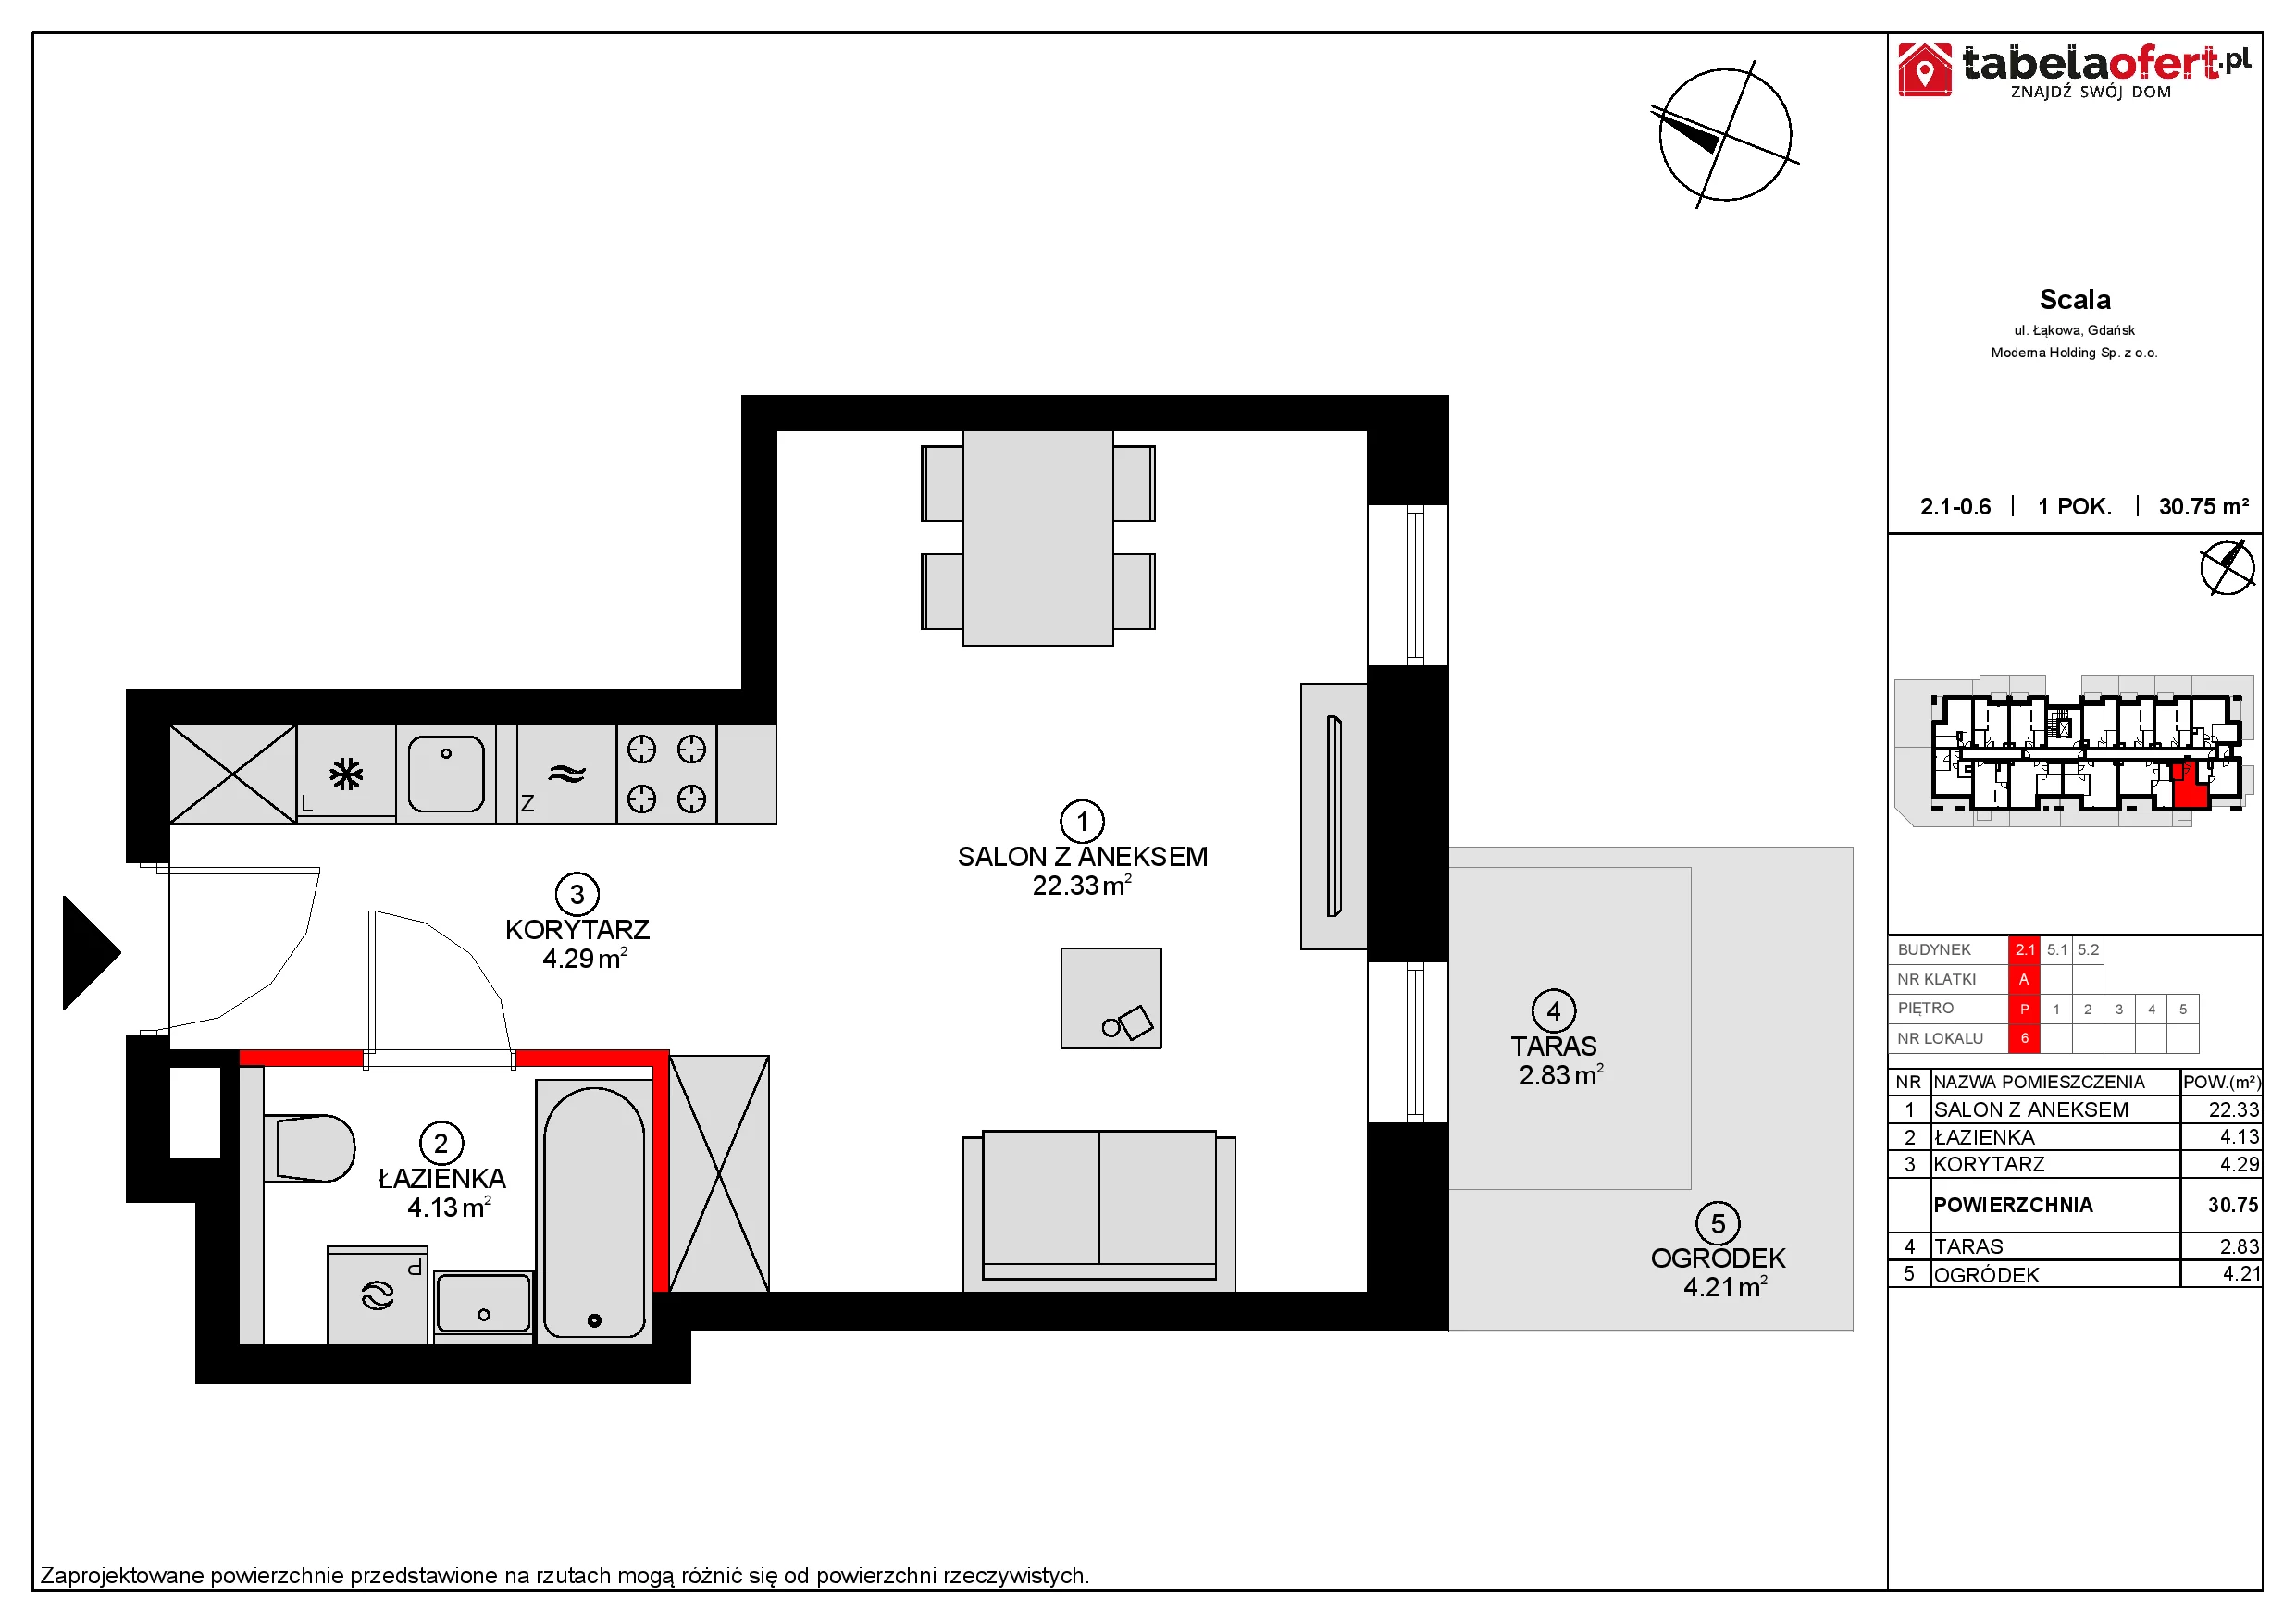 Apartament 30,96 m², parter, oferta nr 2.1-0.6., Scala, Gdańsk, Śródmieście, ul. Łąkowa 60C